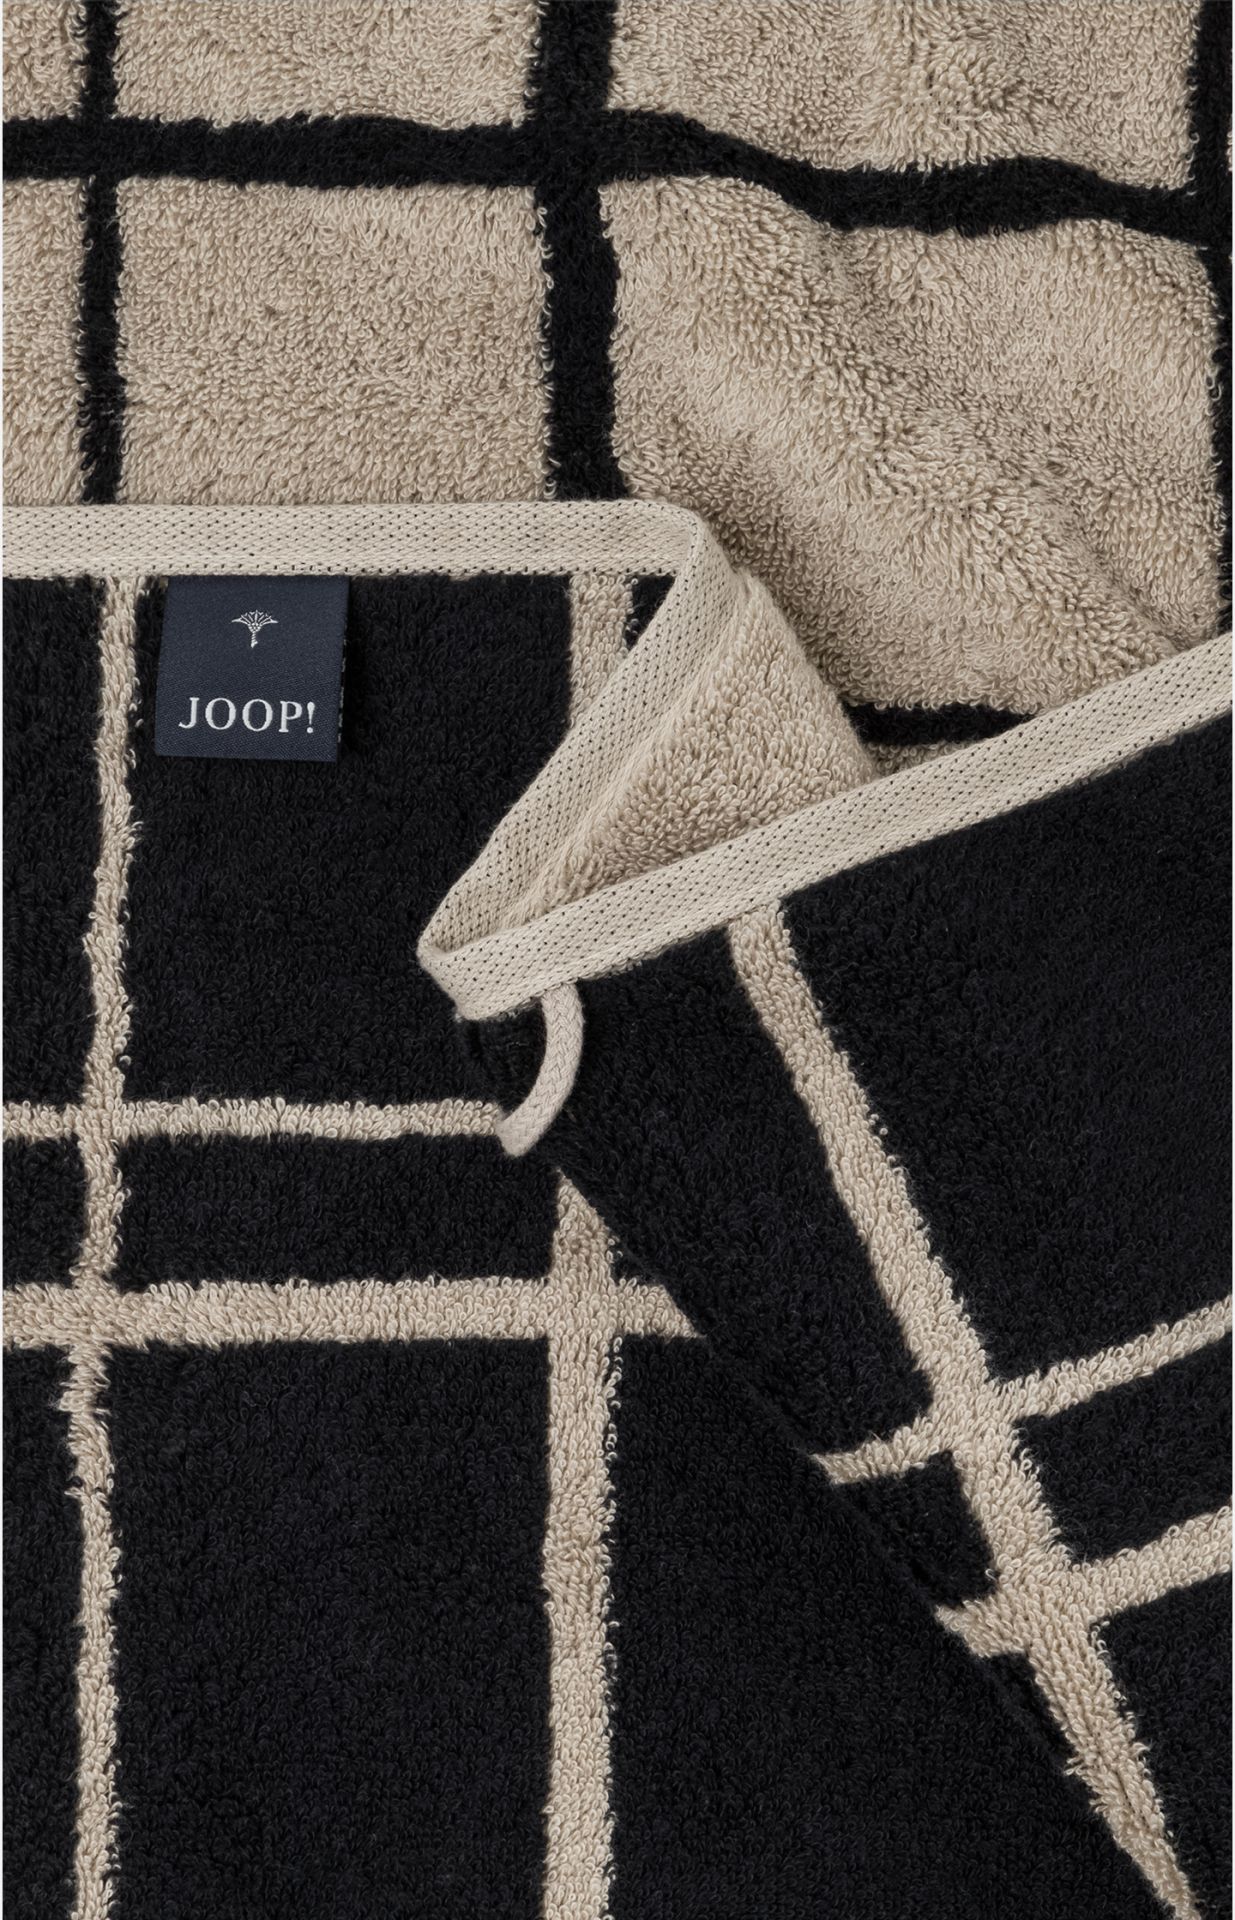 JOOP! Select Layer Handtuch schwarz